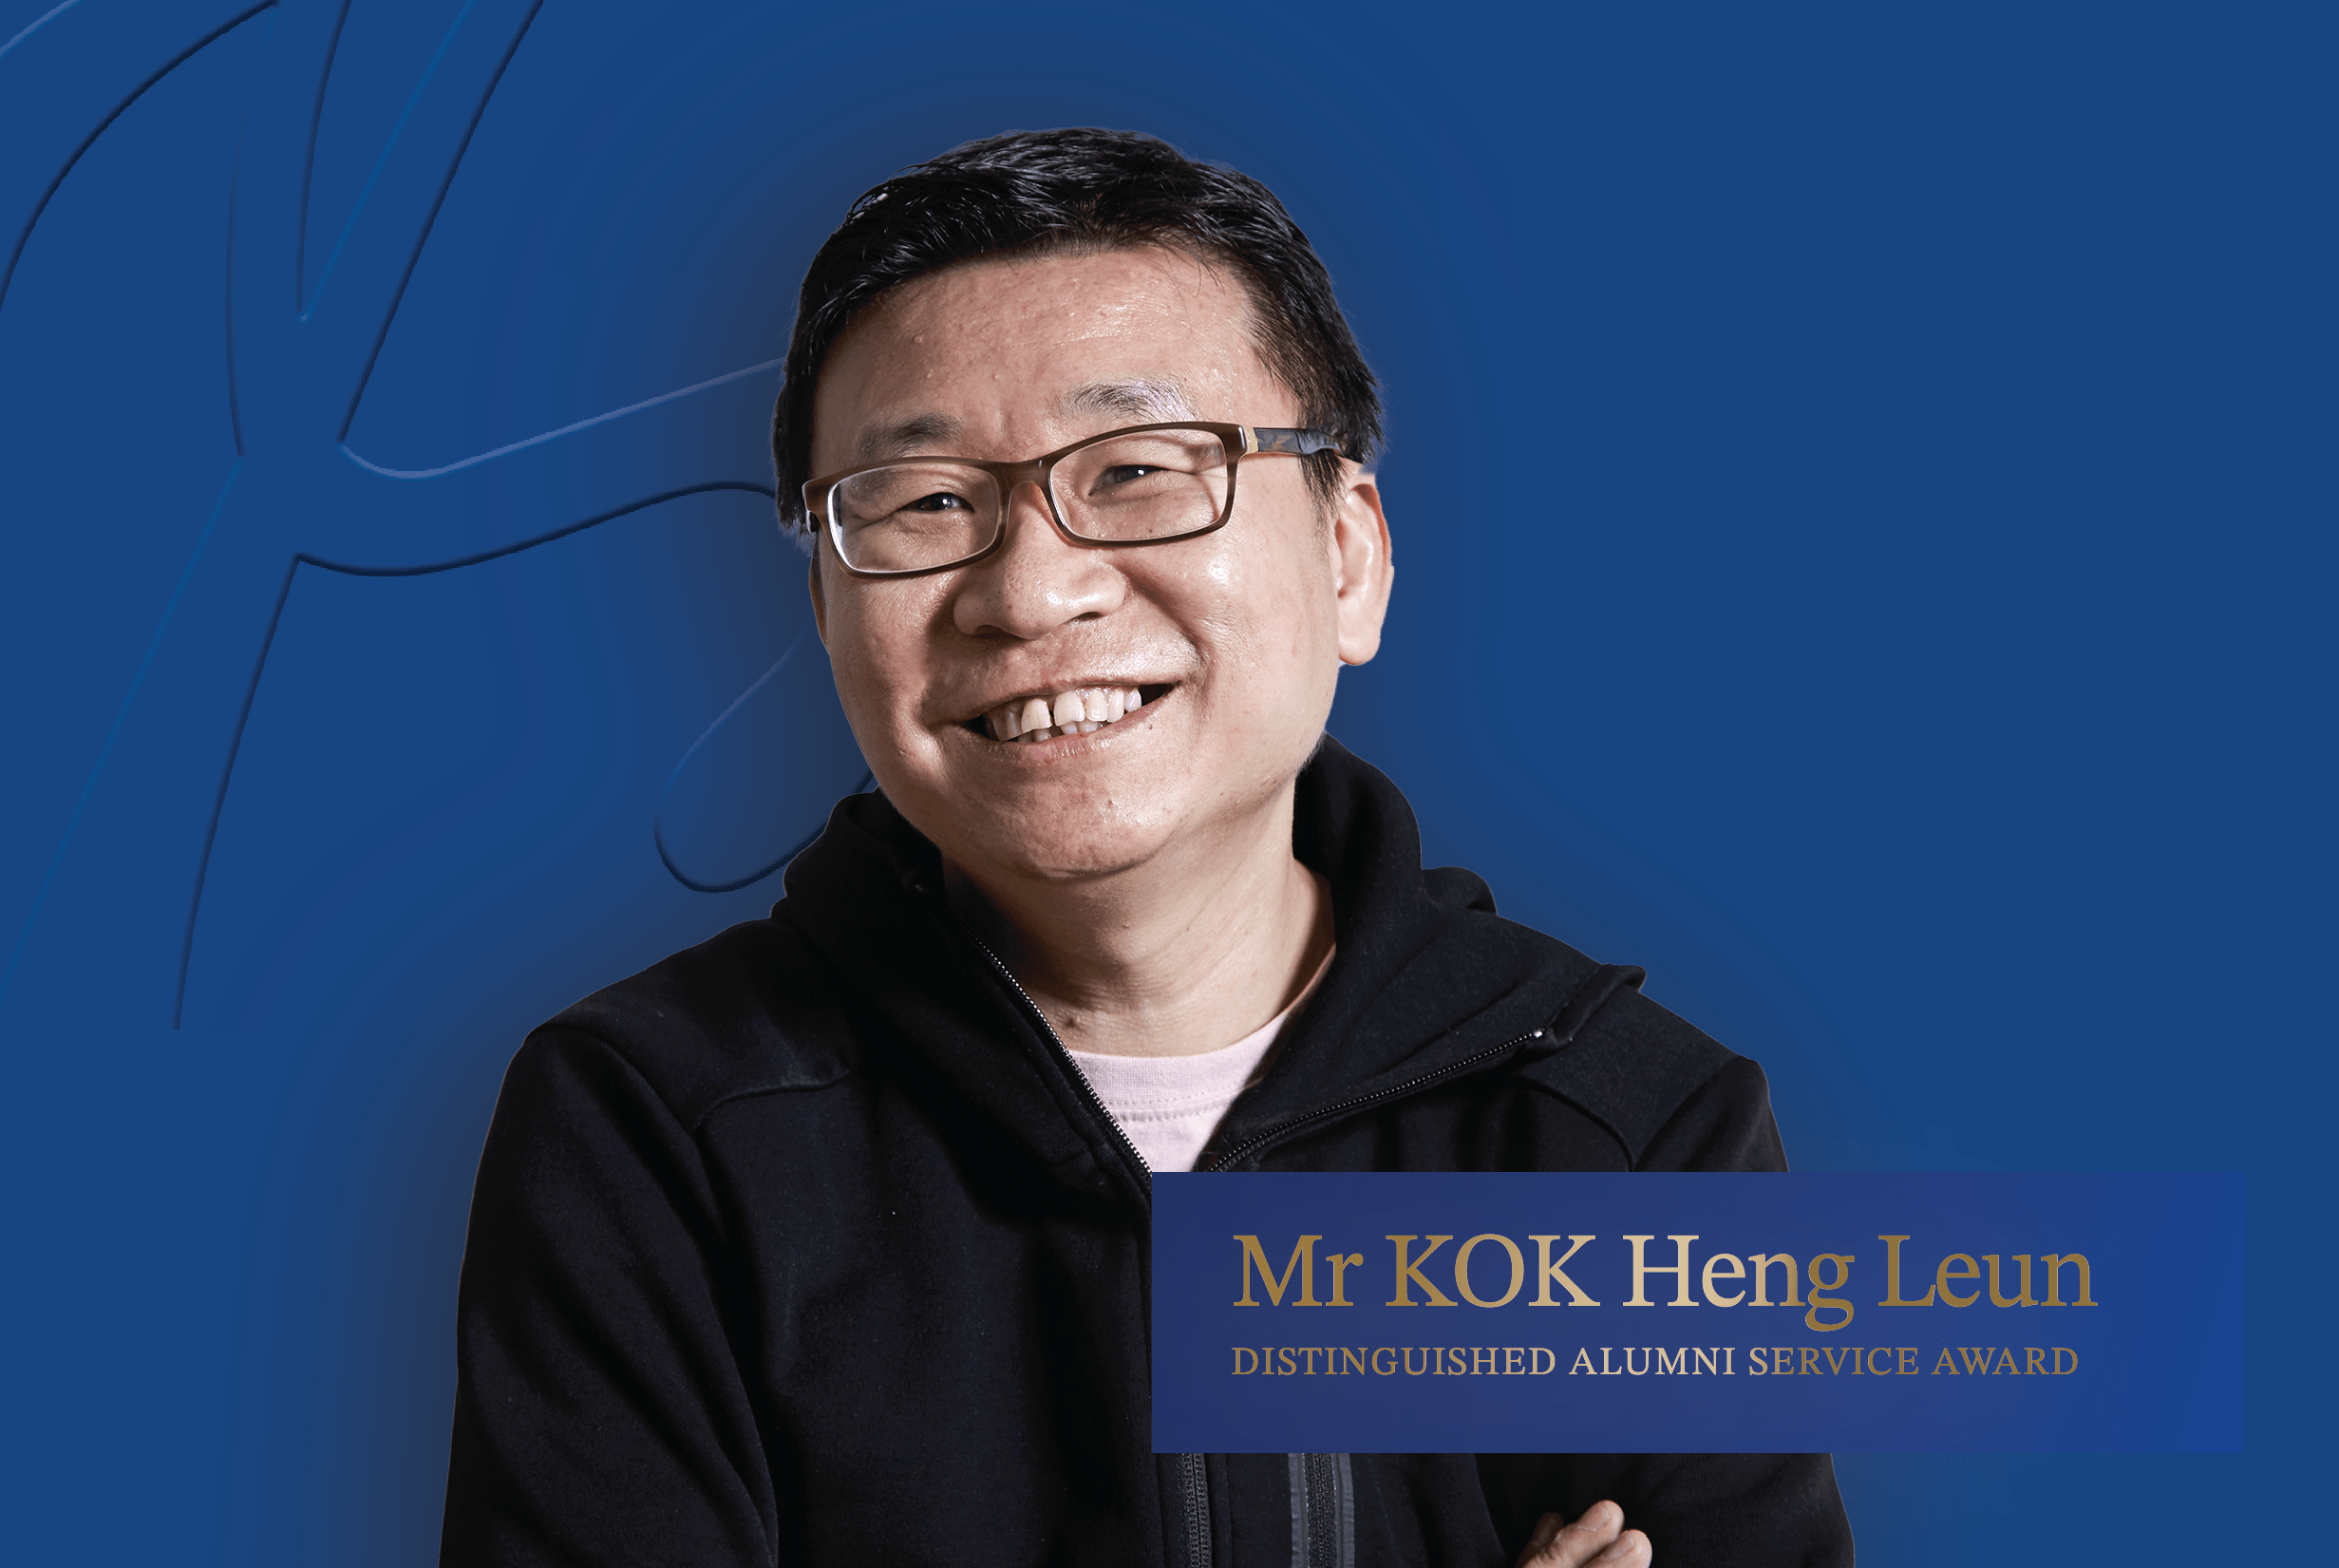 Congratulations Mr Kok Heng Leun!